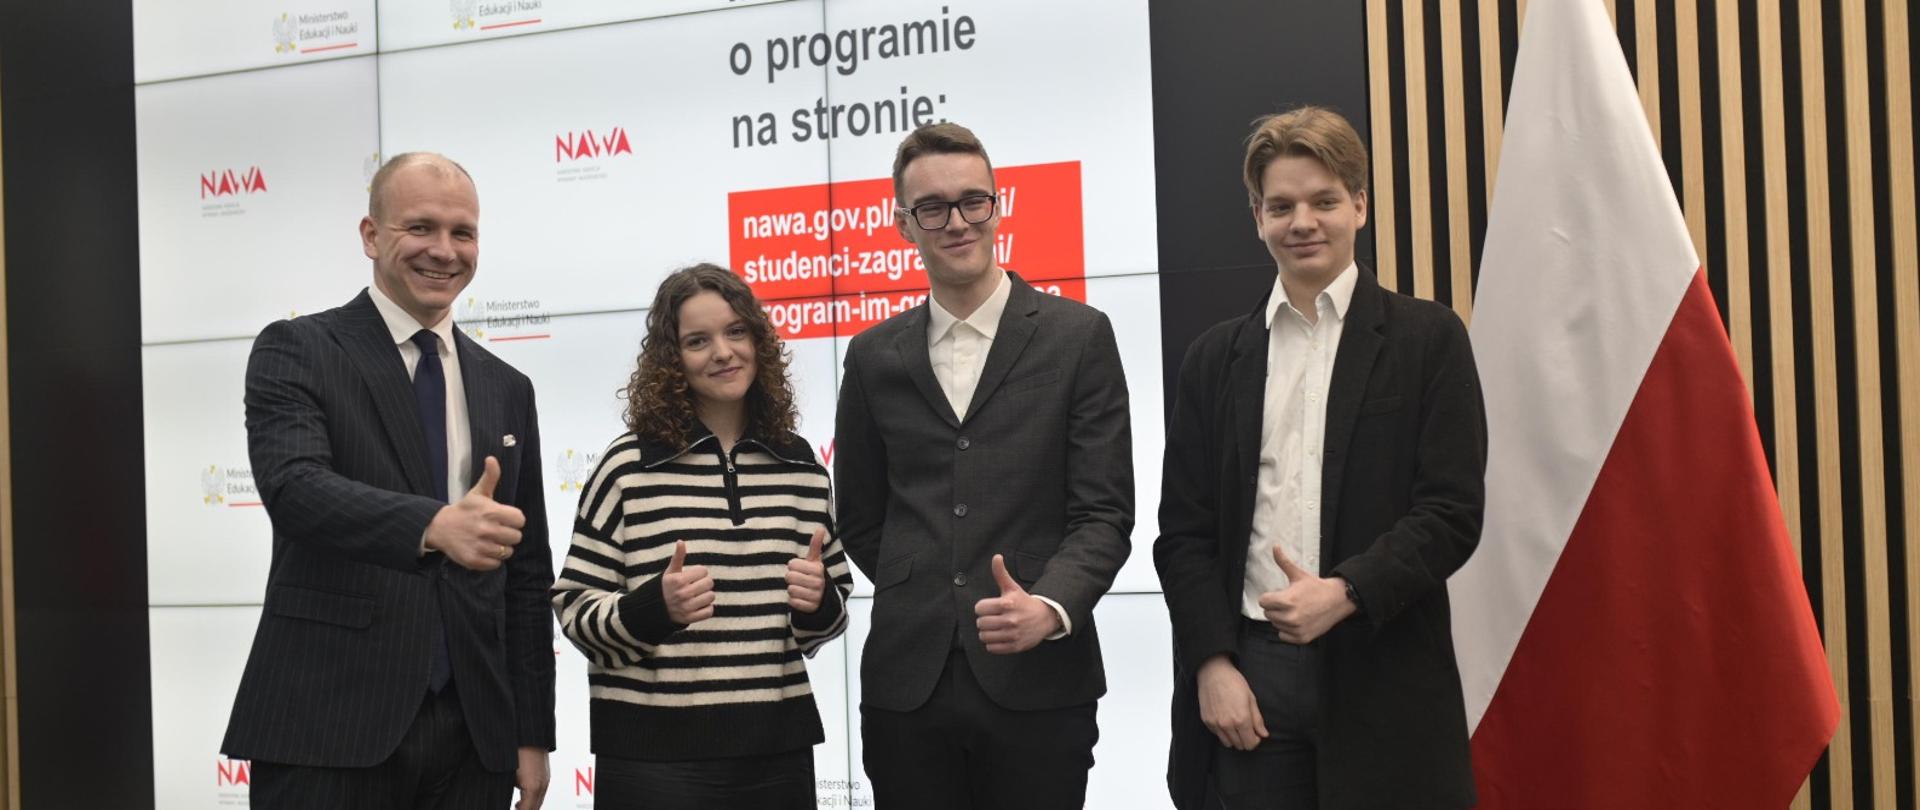 Na tle wielkiego ekranu z napisami NAWA stoi trzech mężczyzn w garniturach i kobieta w swetrze w poziome biało-czarne paski, wszyscy uśmiechają się i pokazują kciuki w górę, za nimi polska flaga.